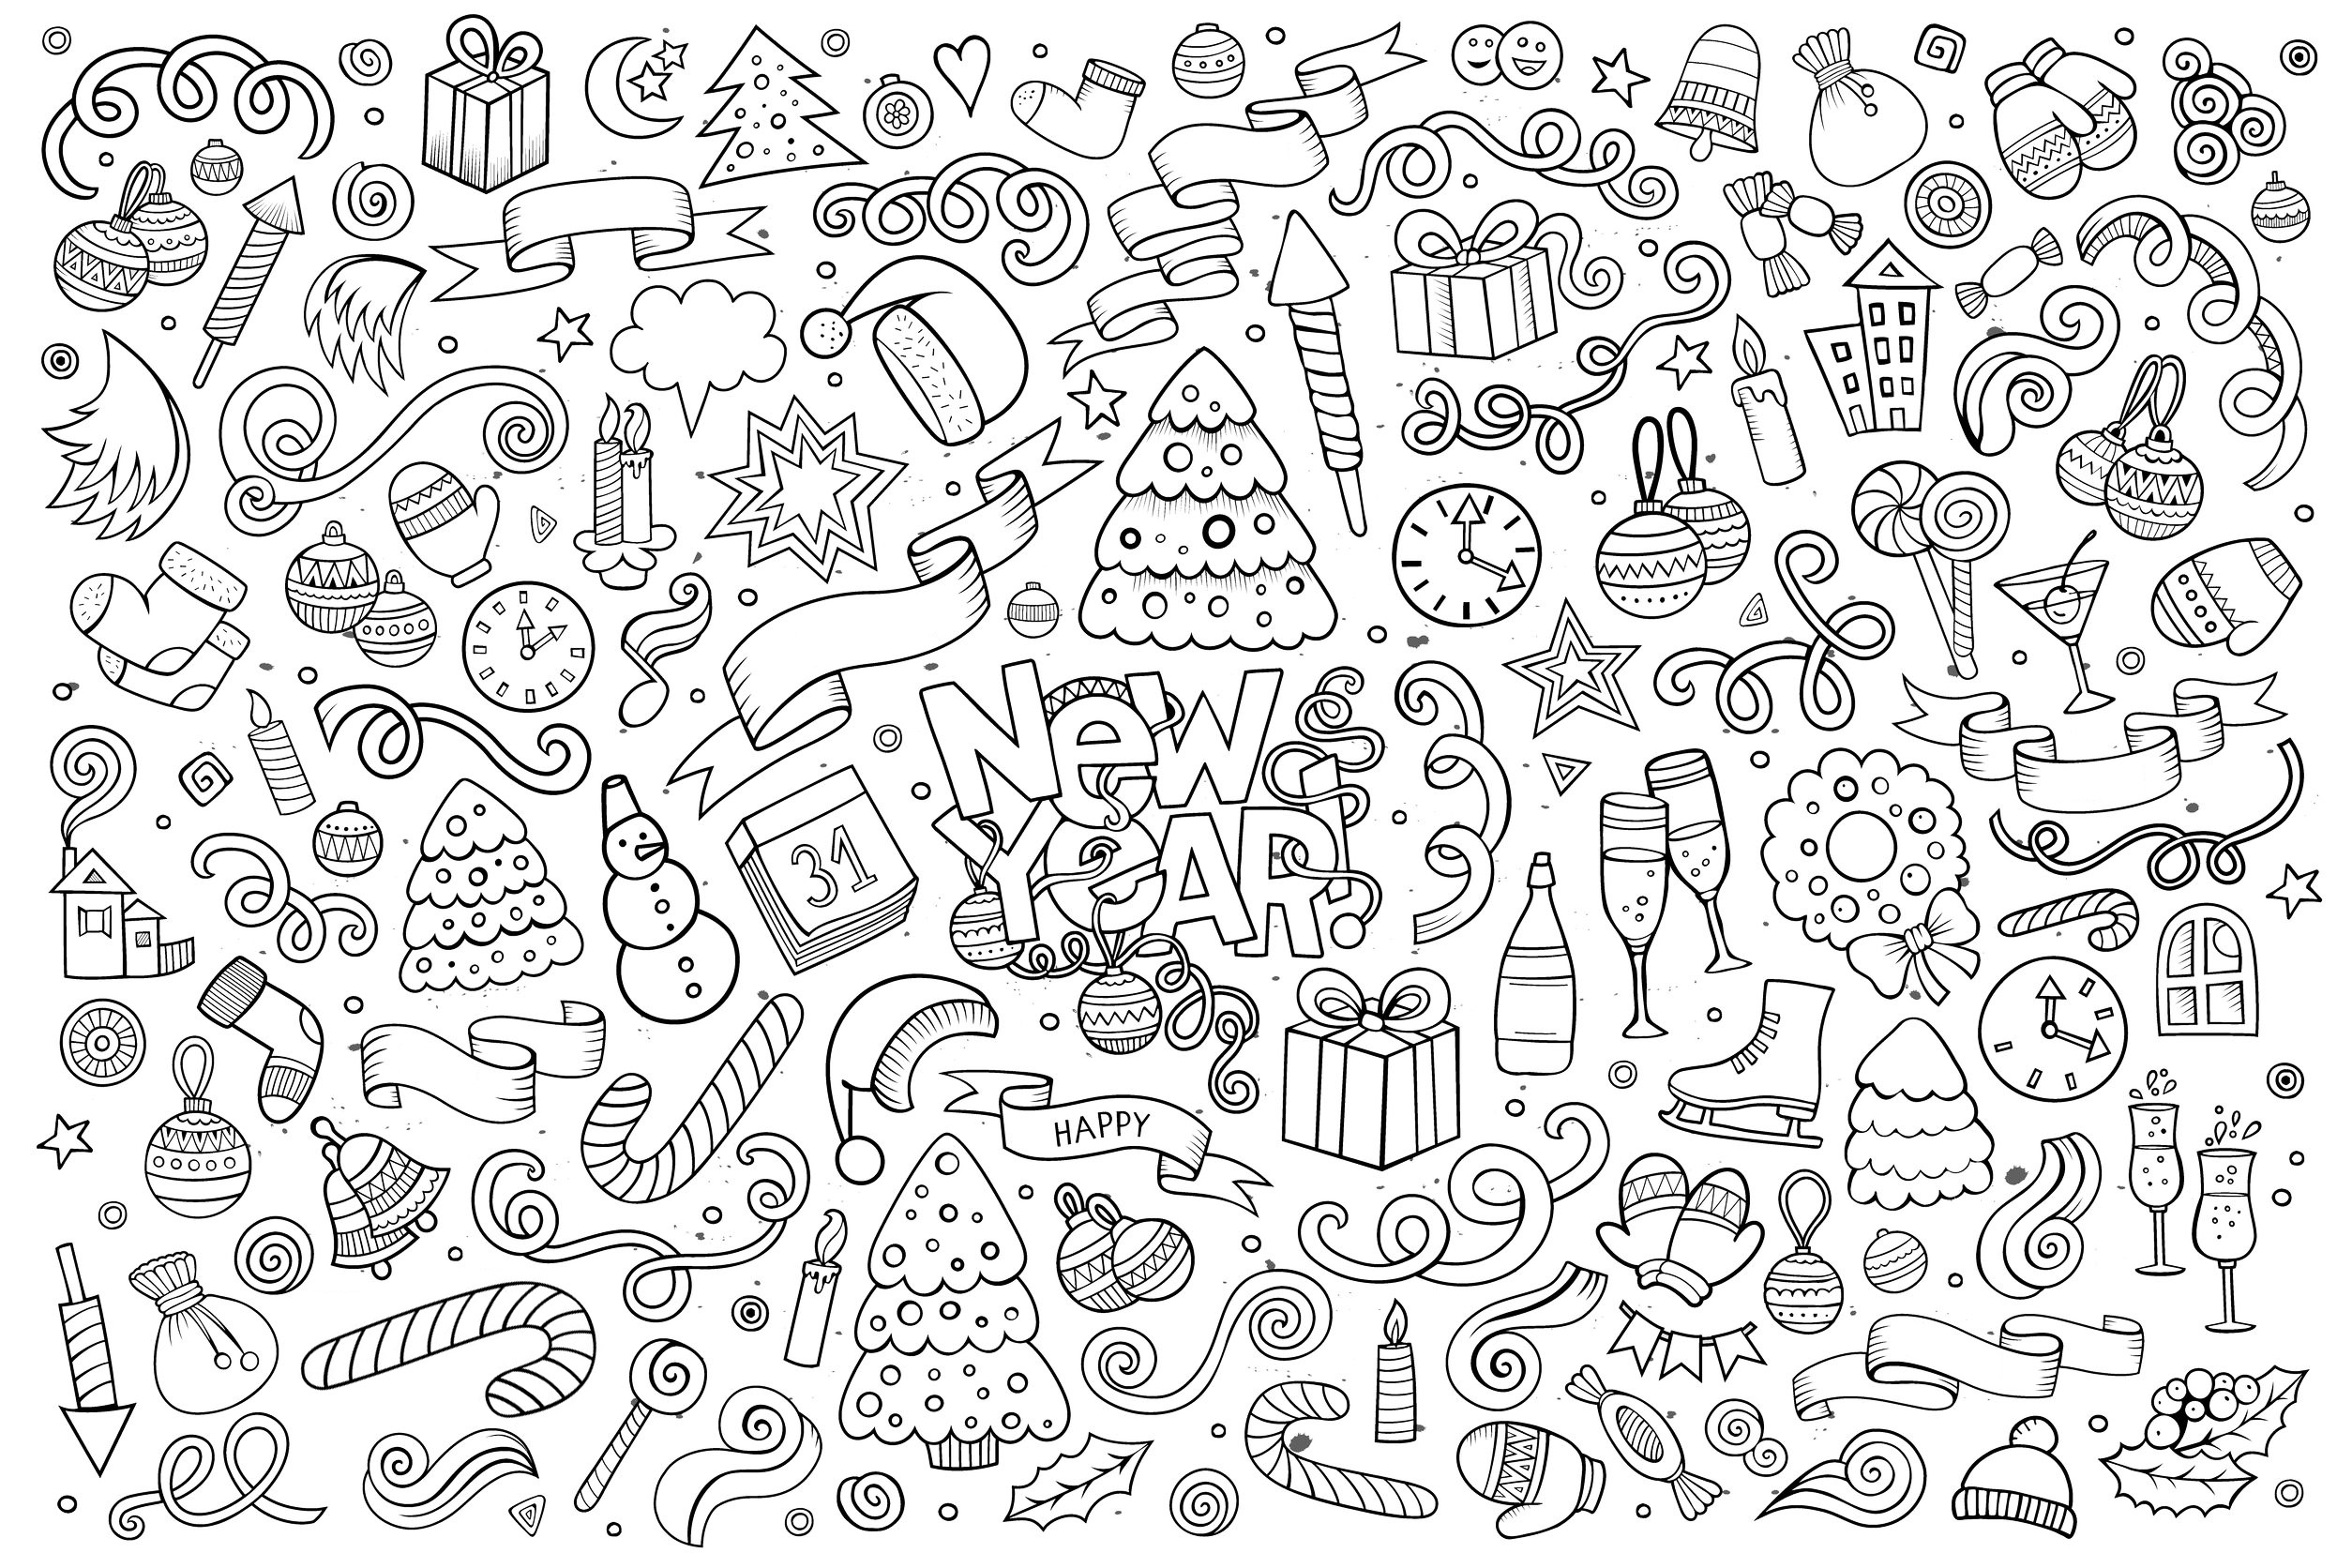 Rabisco para colorir 'Feliz Ano Novo', com desenhos complexos. Numerosos objectos e motivos ligados ao tema do Ano Novo, Artista : Balabolka   Fonte : 123rf